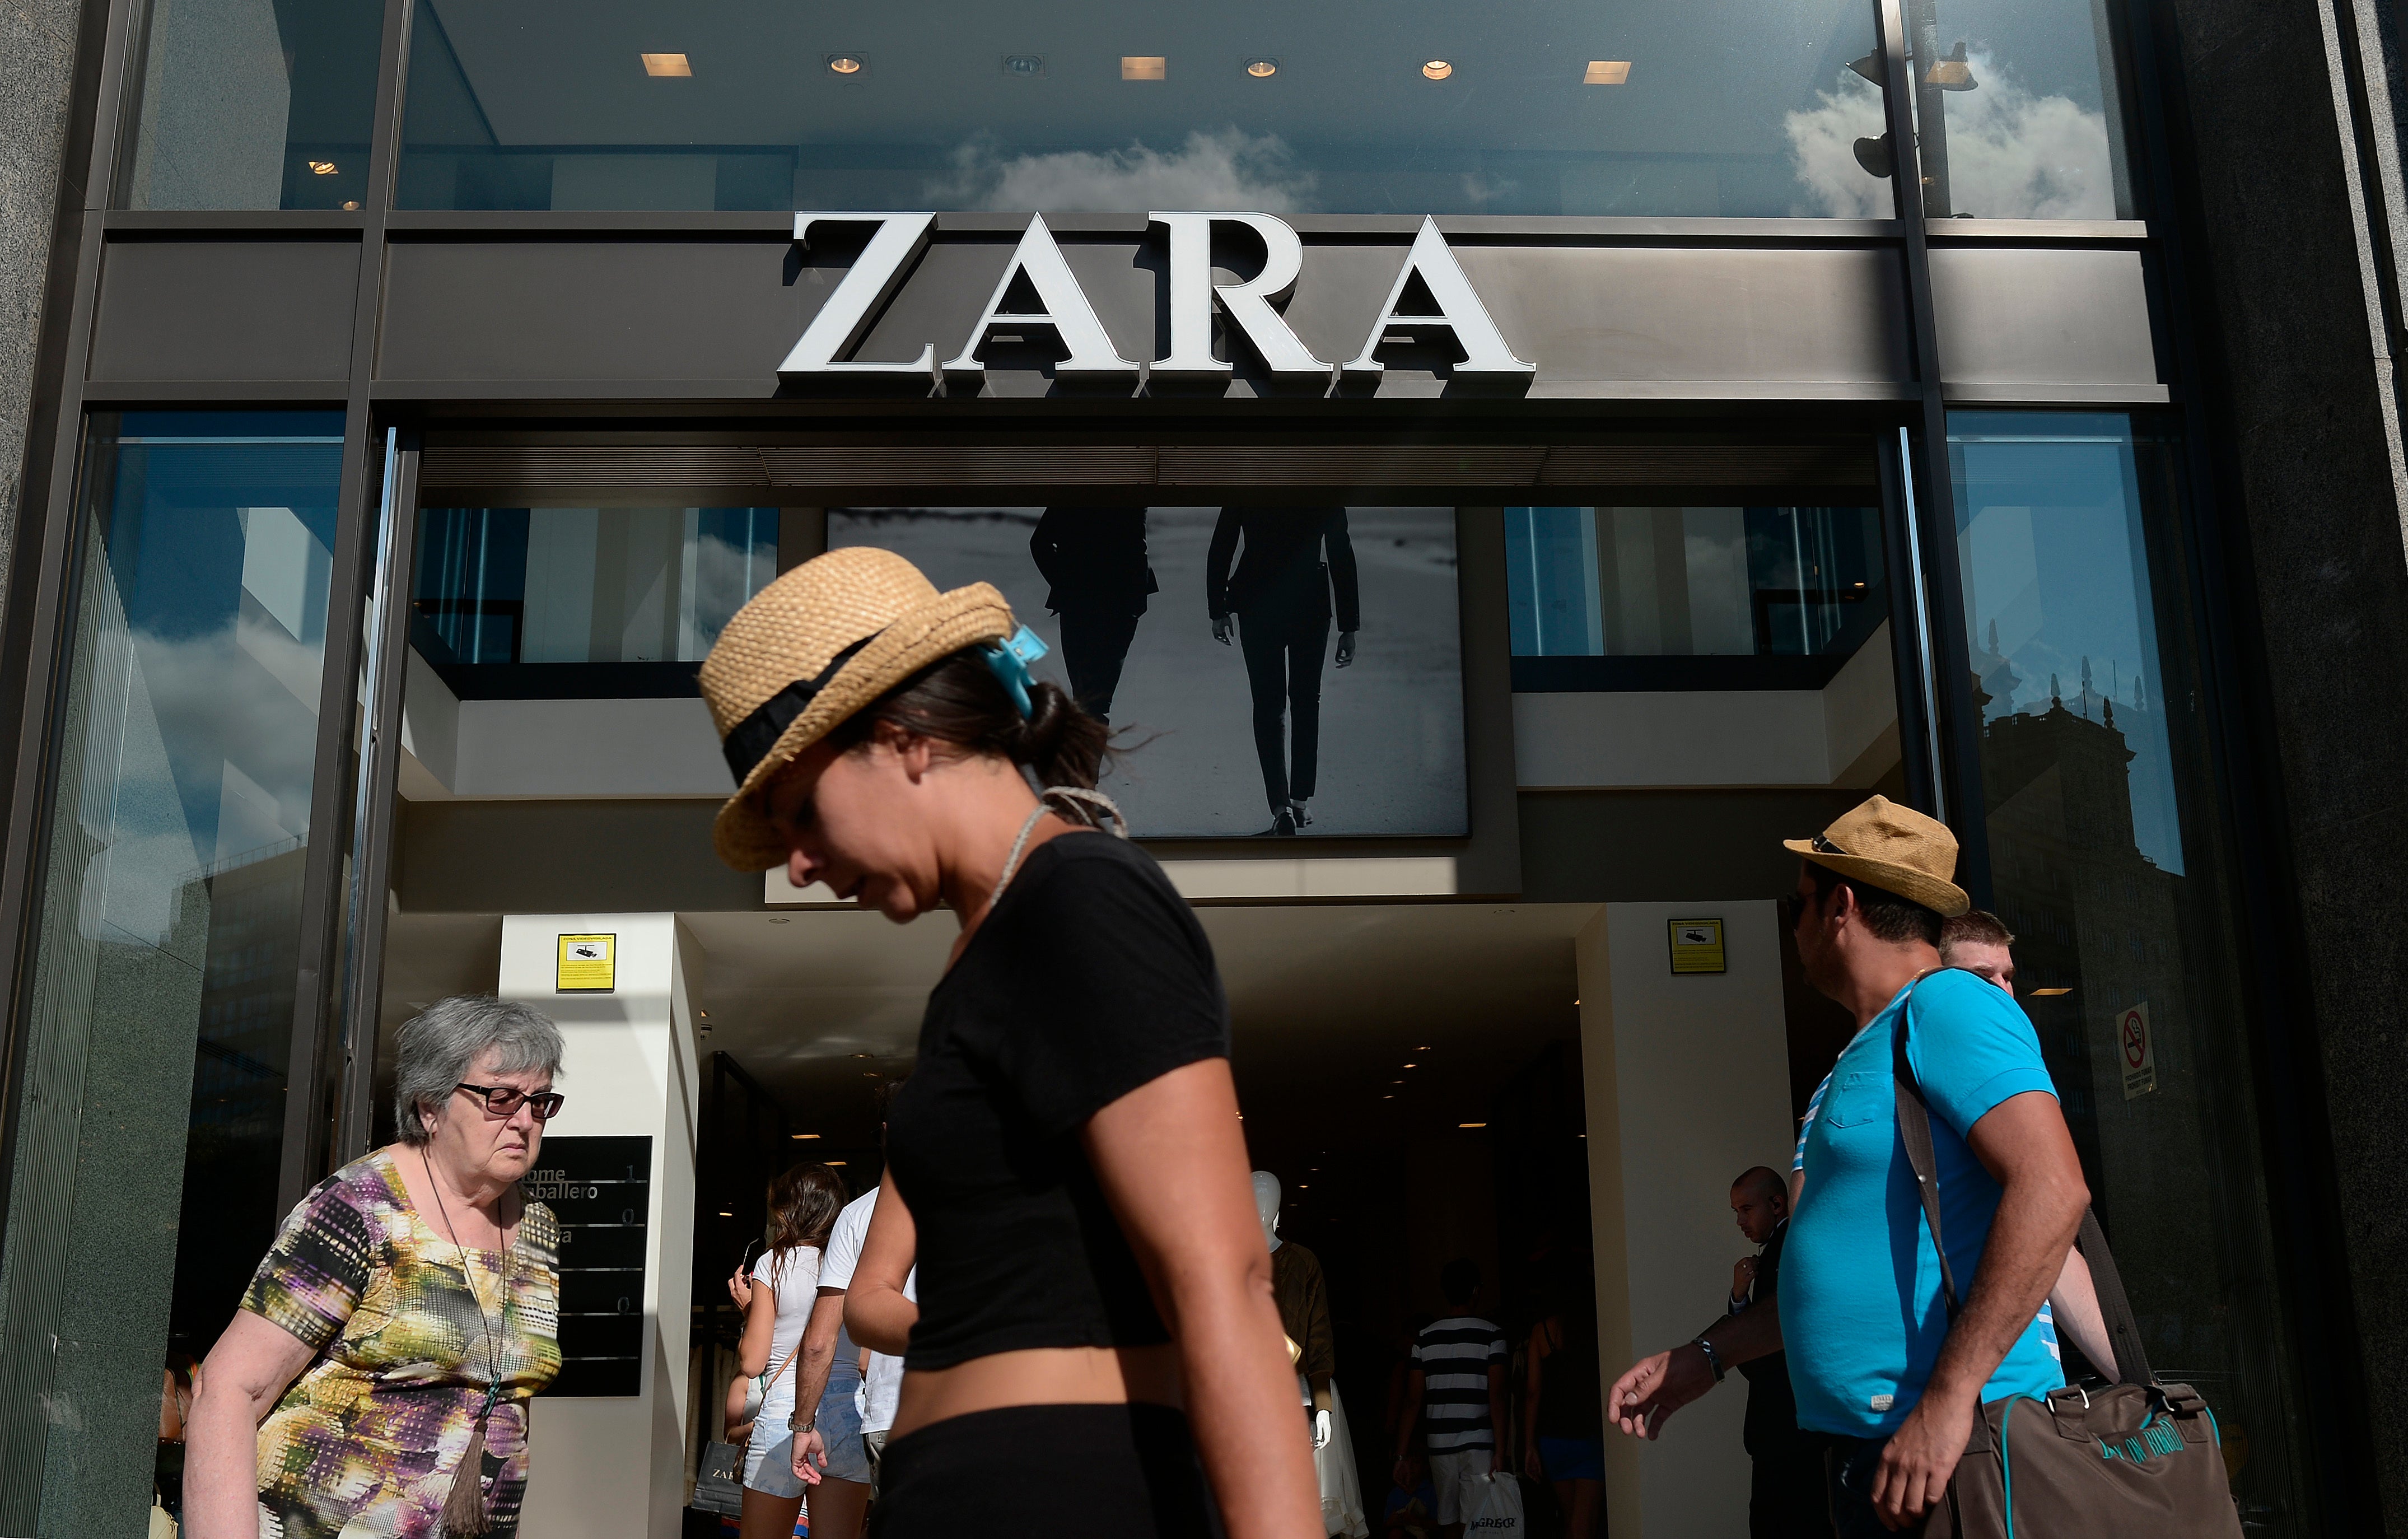 Zara Ad Campaign Withdrawn